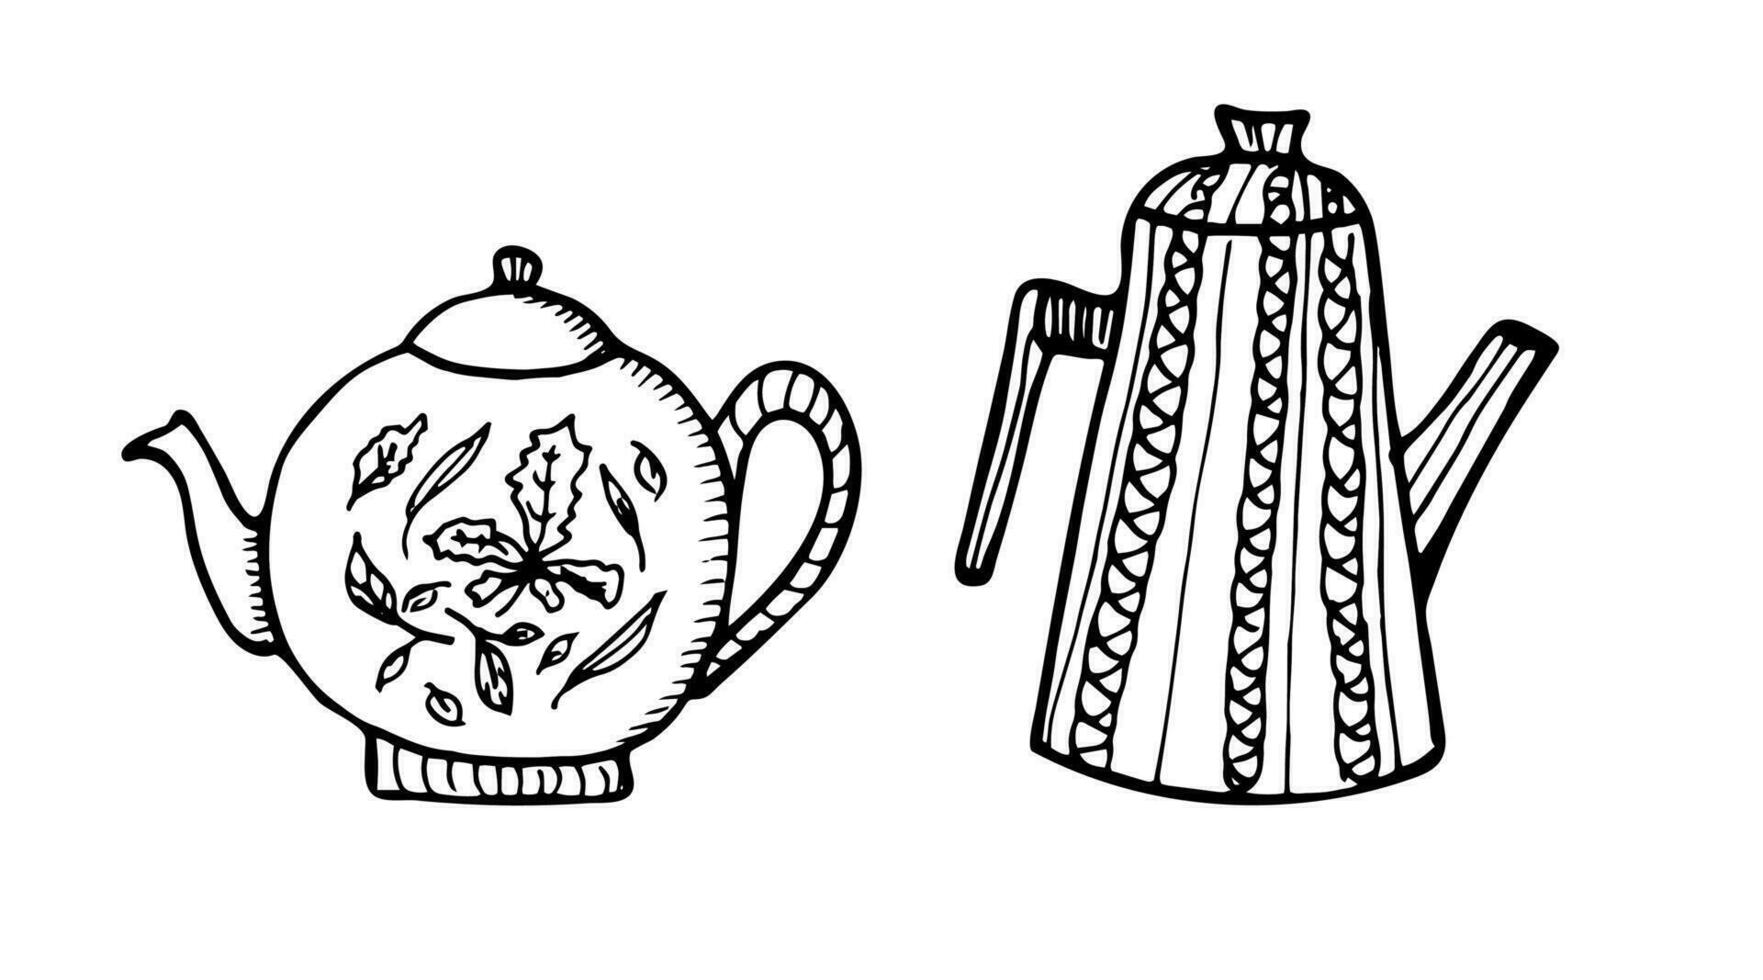 Hand gezeichnet Teekannen Satz. Gekritzel Stil Teekannen und Kaffee Wasserkocher isoliert auf Weiß Hintergrund. Vektor Illustration auf Tee Zeit Symbole zum Cafe und Restaurant Speisekarte Design.